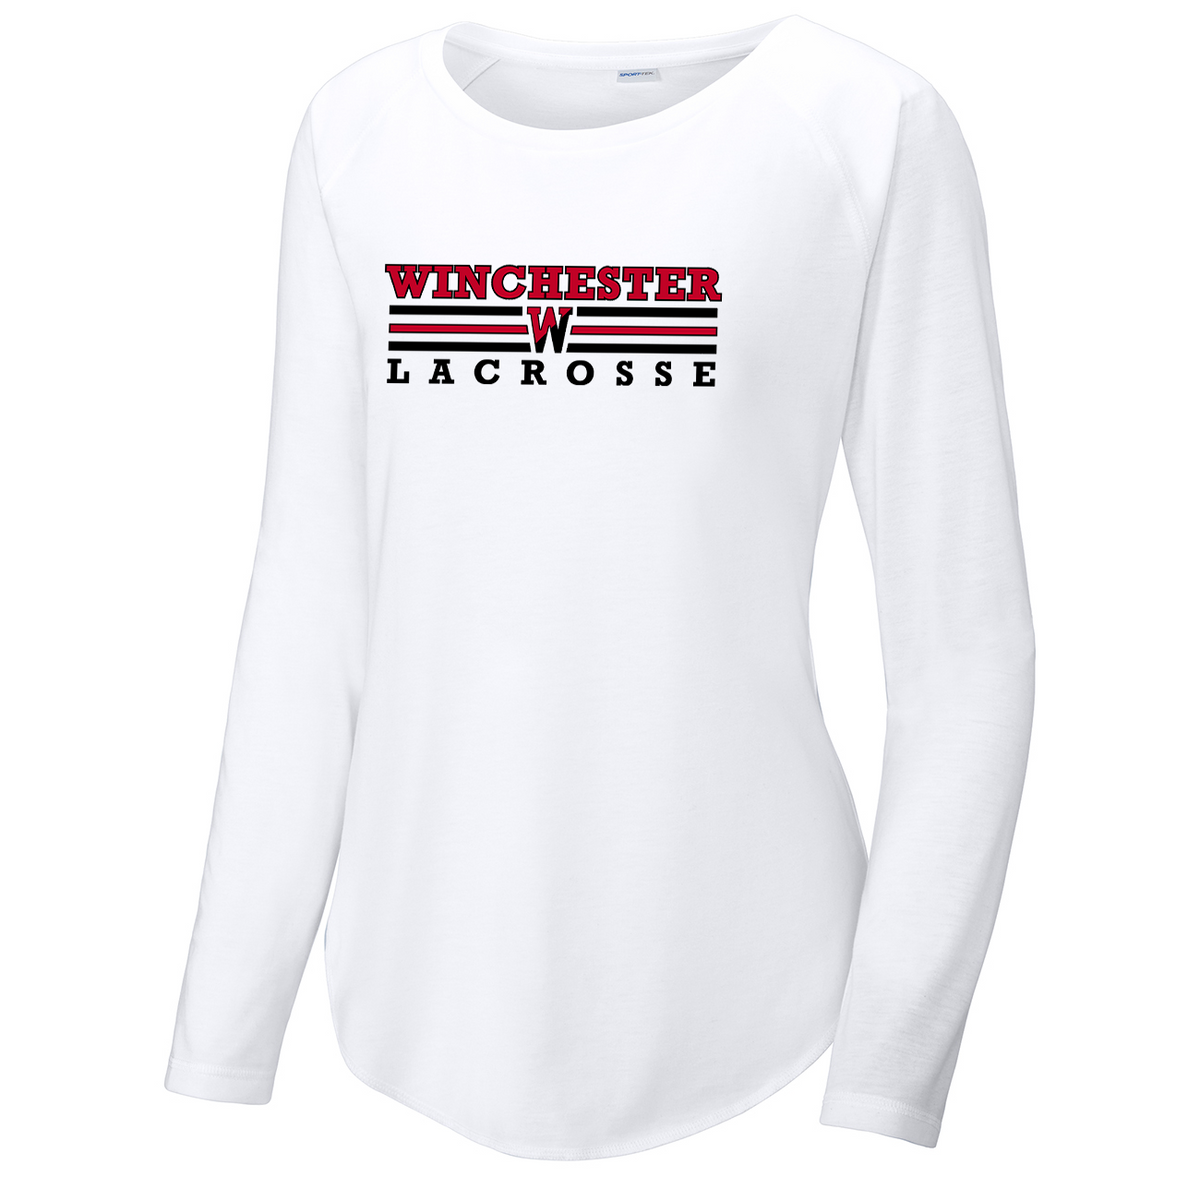 Winchester Lacrosse Women's Raglan Long Sleeve CottonTouch